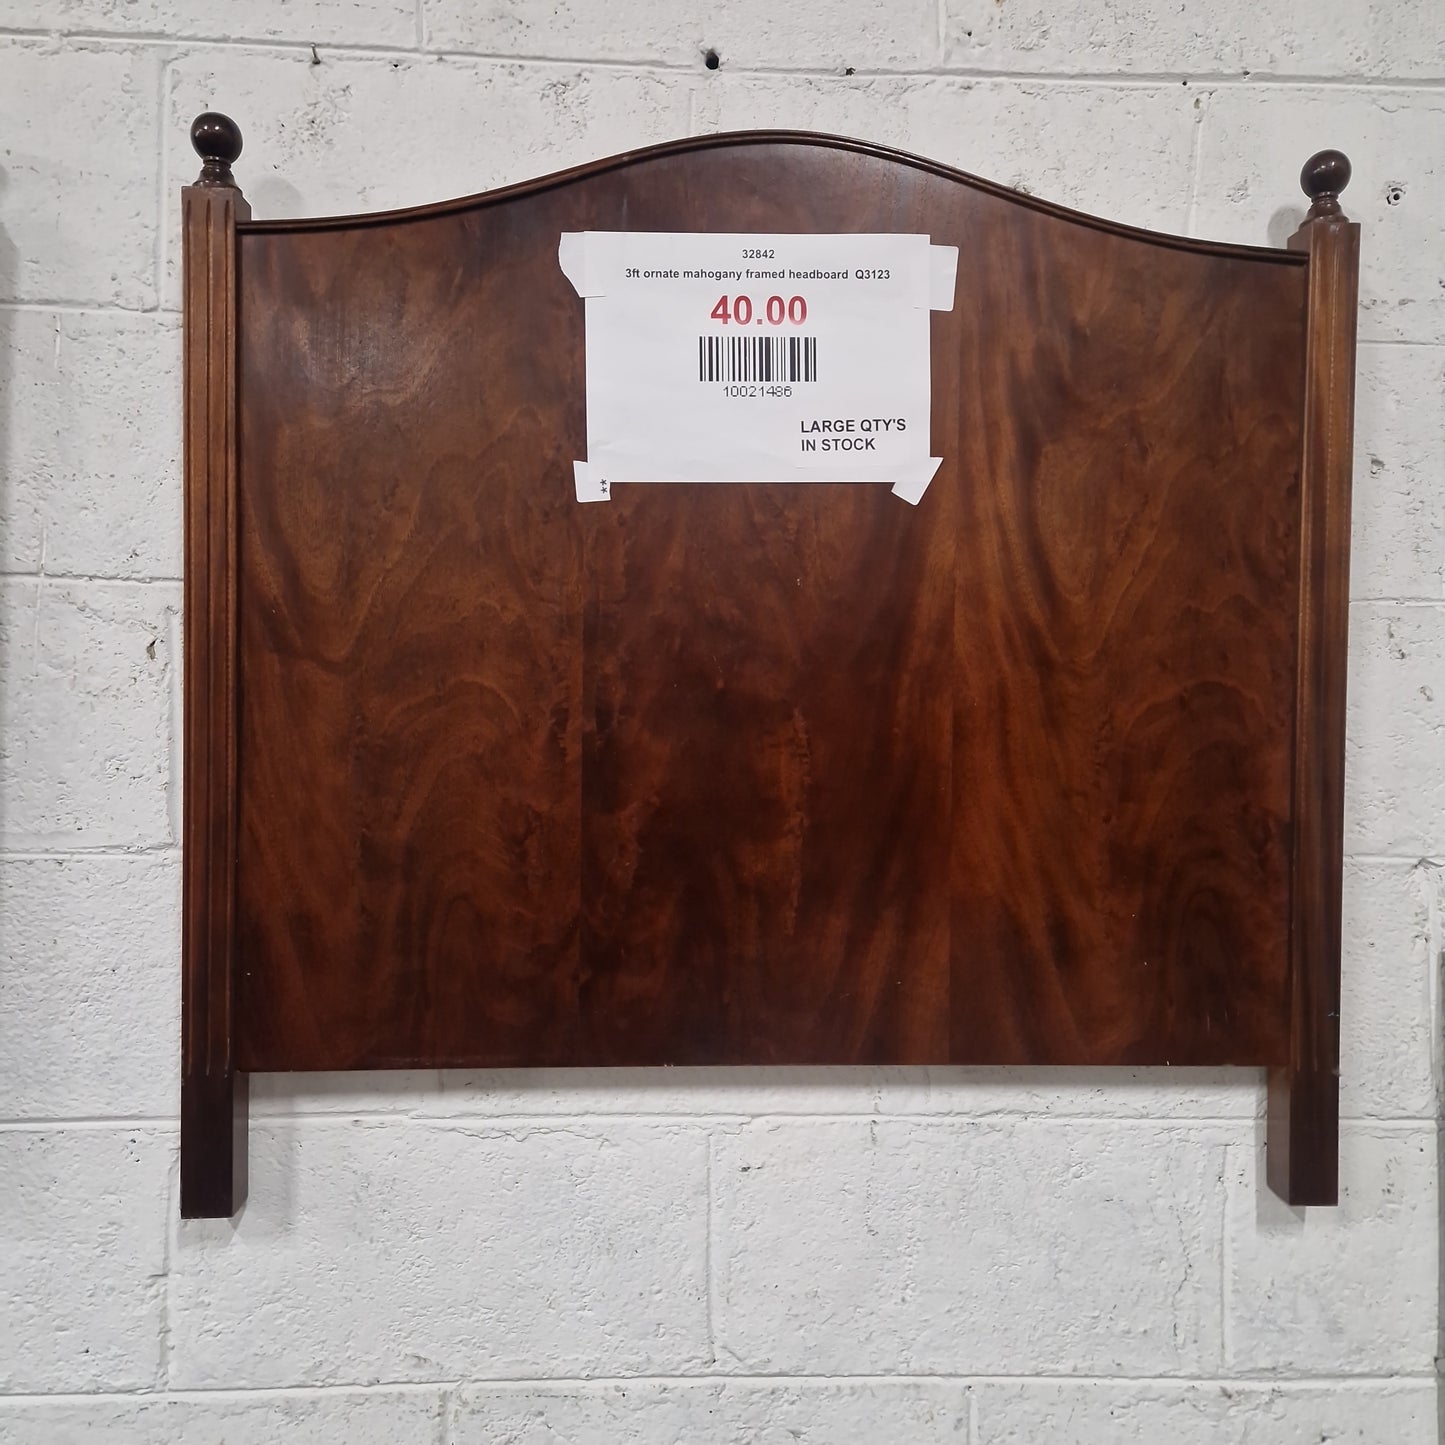 3ft ornate mahogany framed headboard